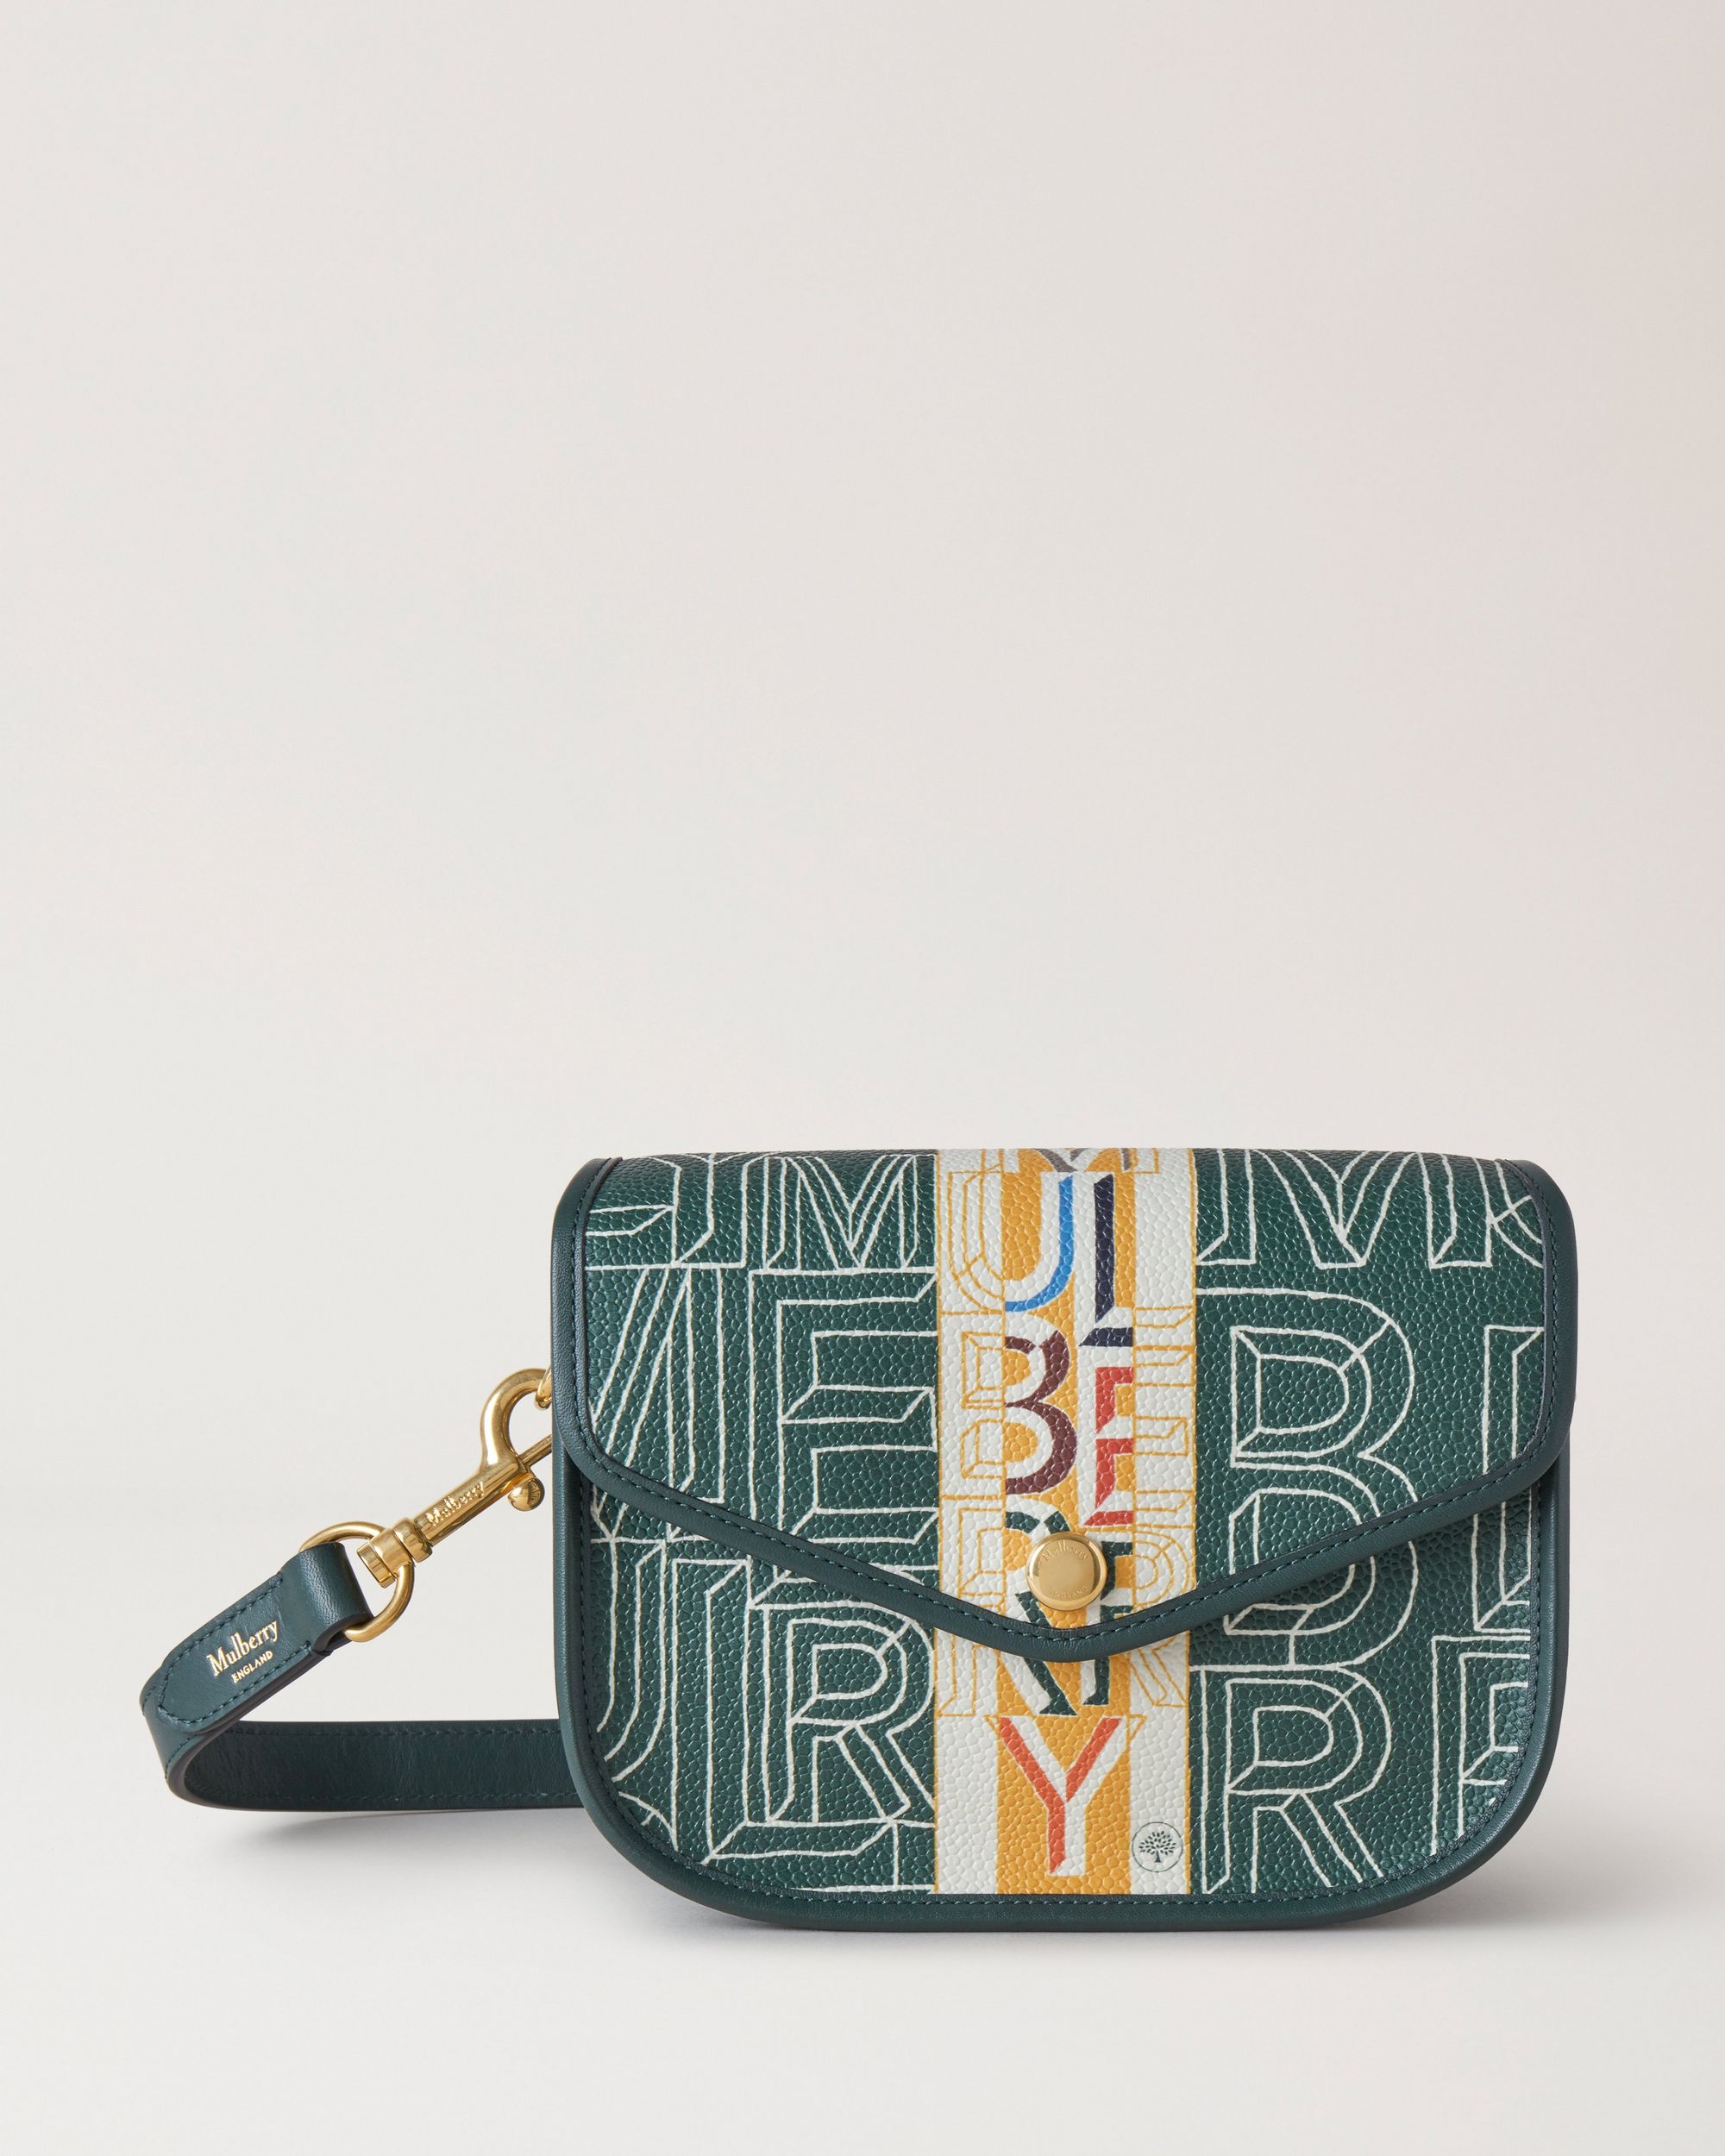 Green patterned designer satchel